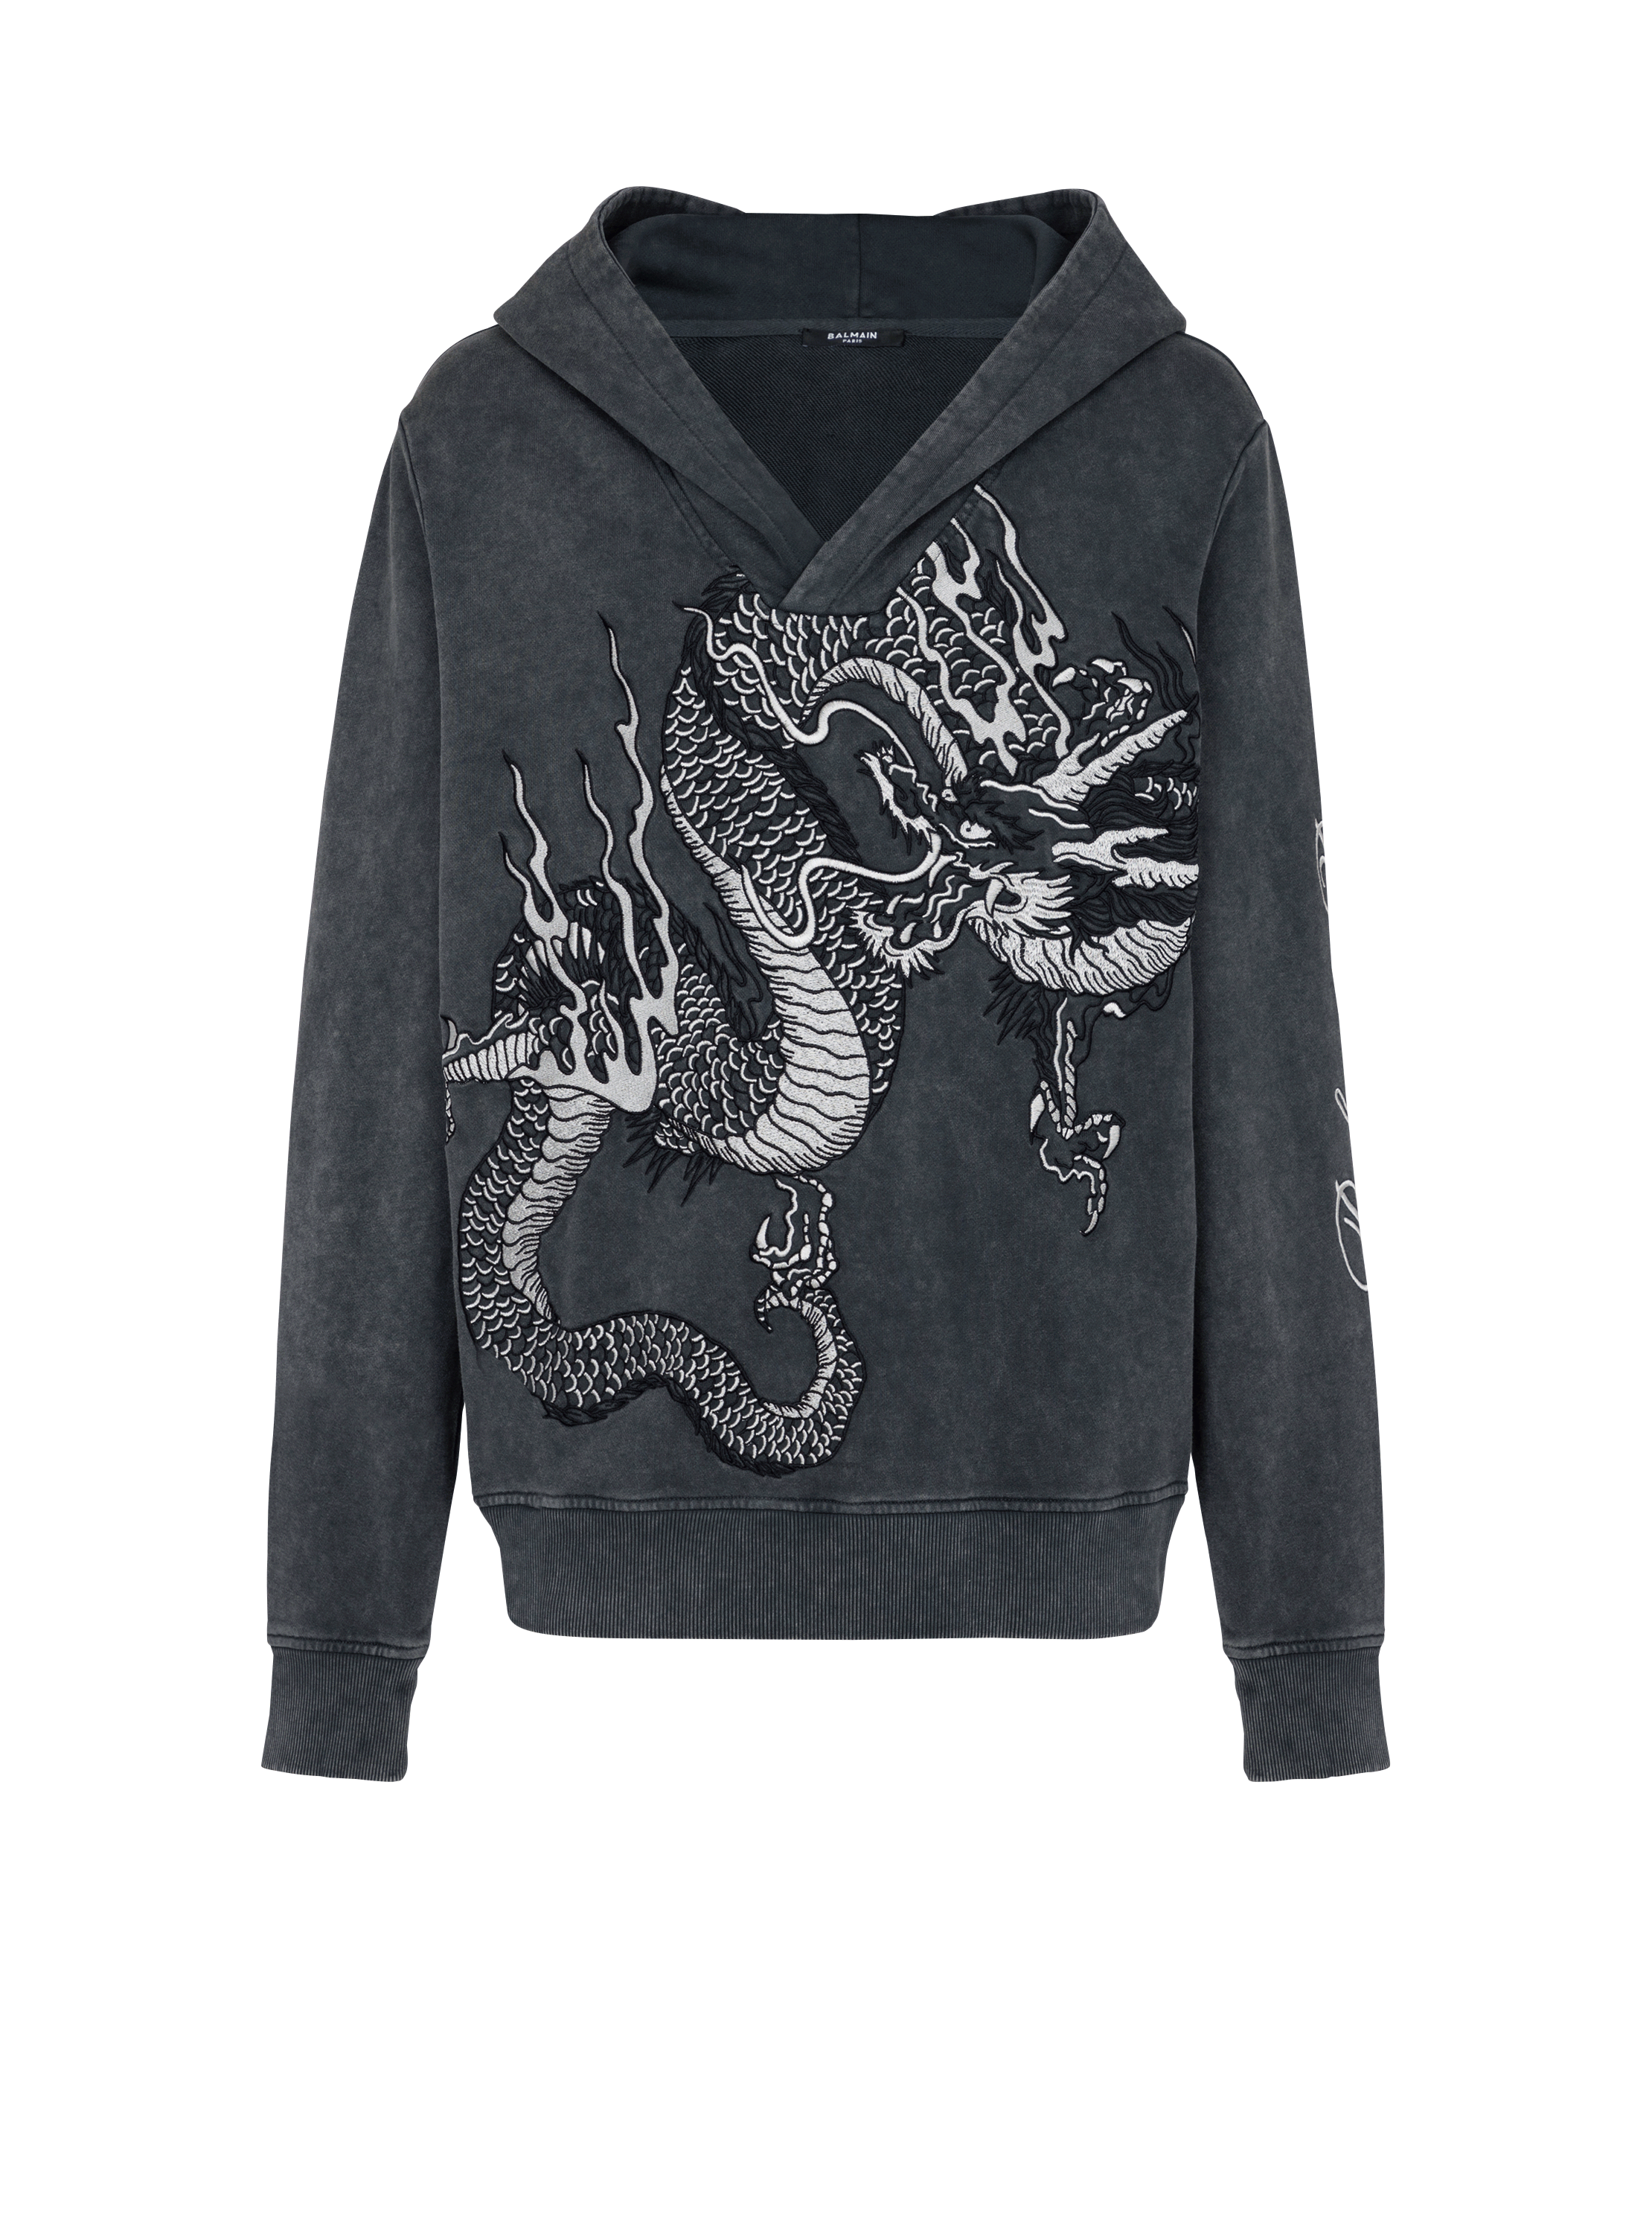 Sweatshirt mit Drachen-Stickerei, grau, hi-res